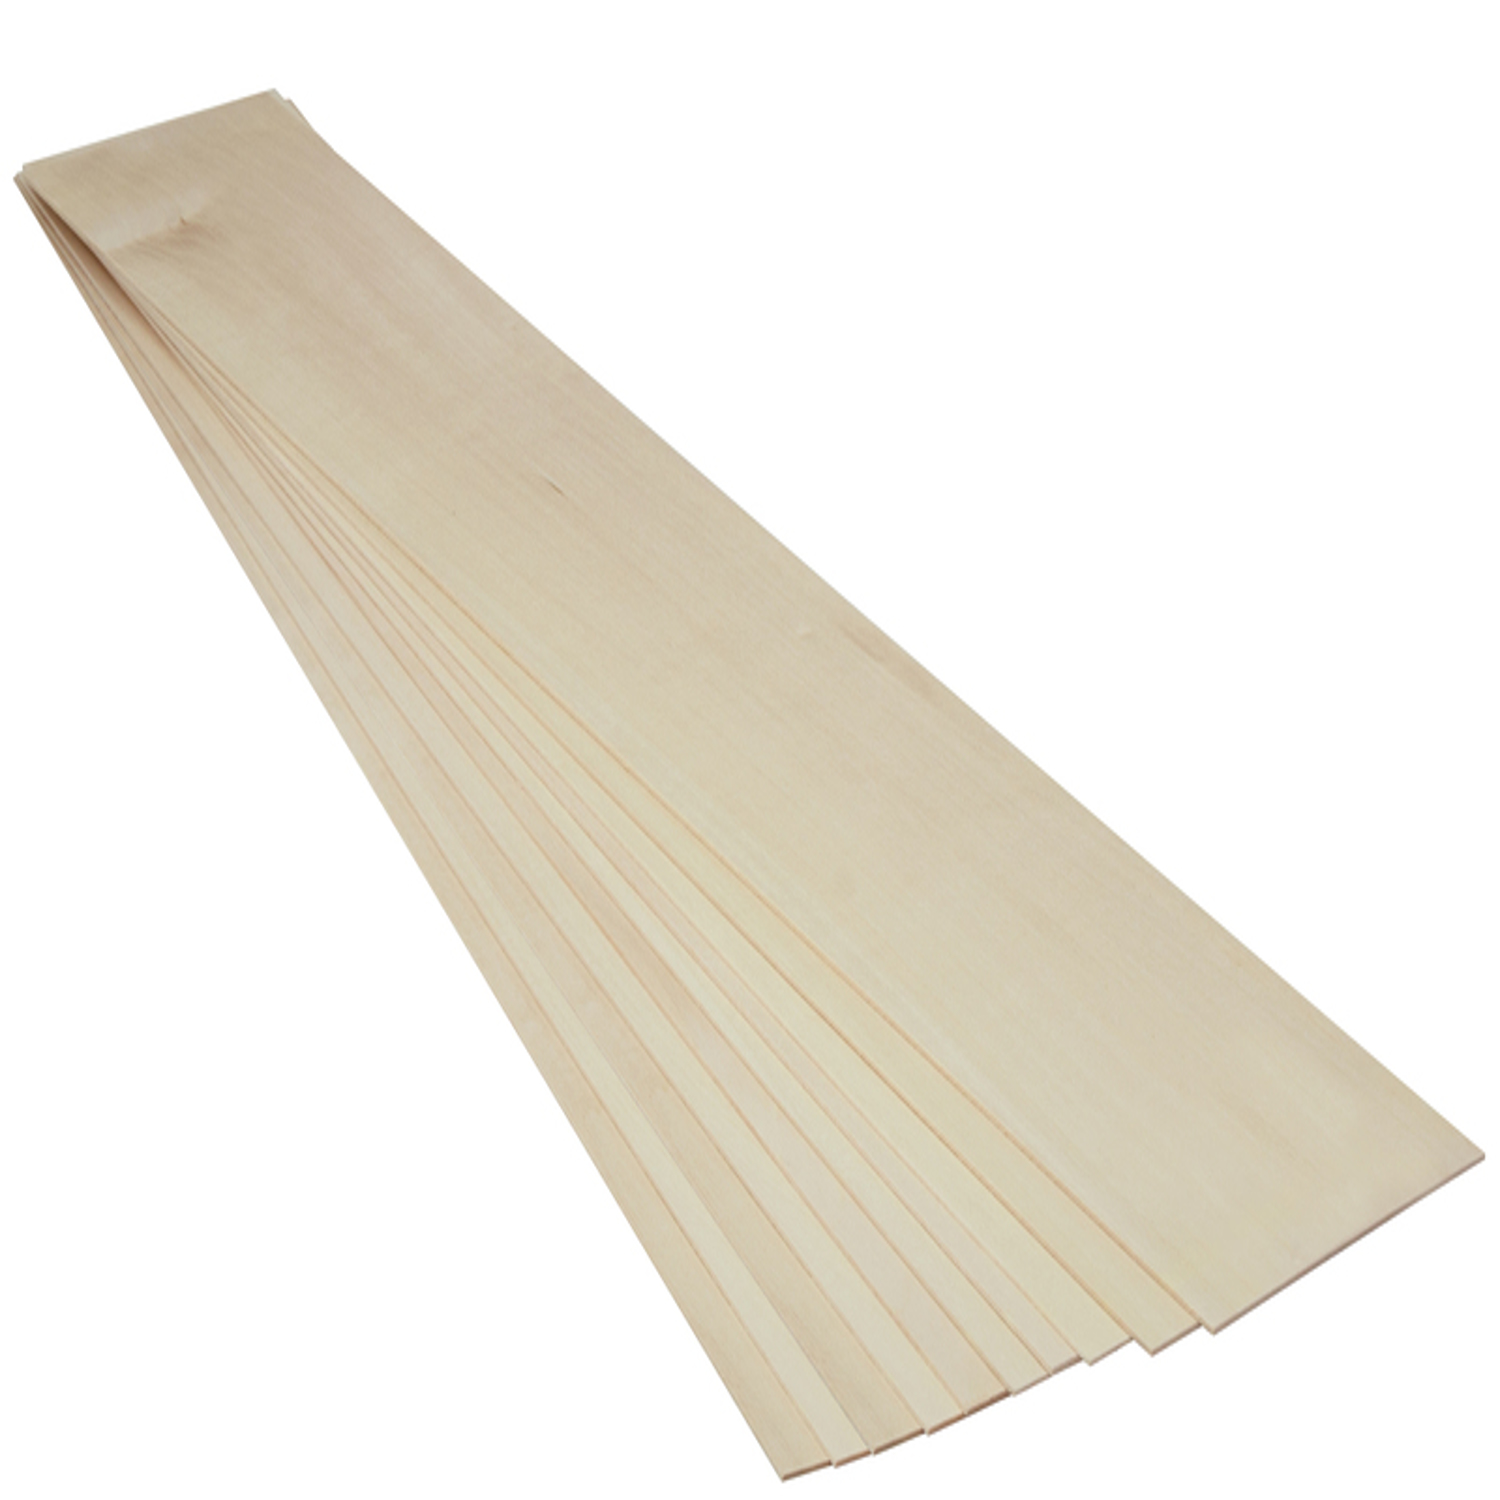 Balsa wood sheet - Scored